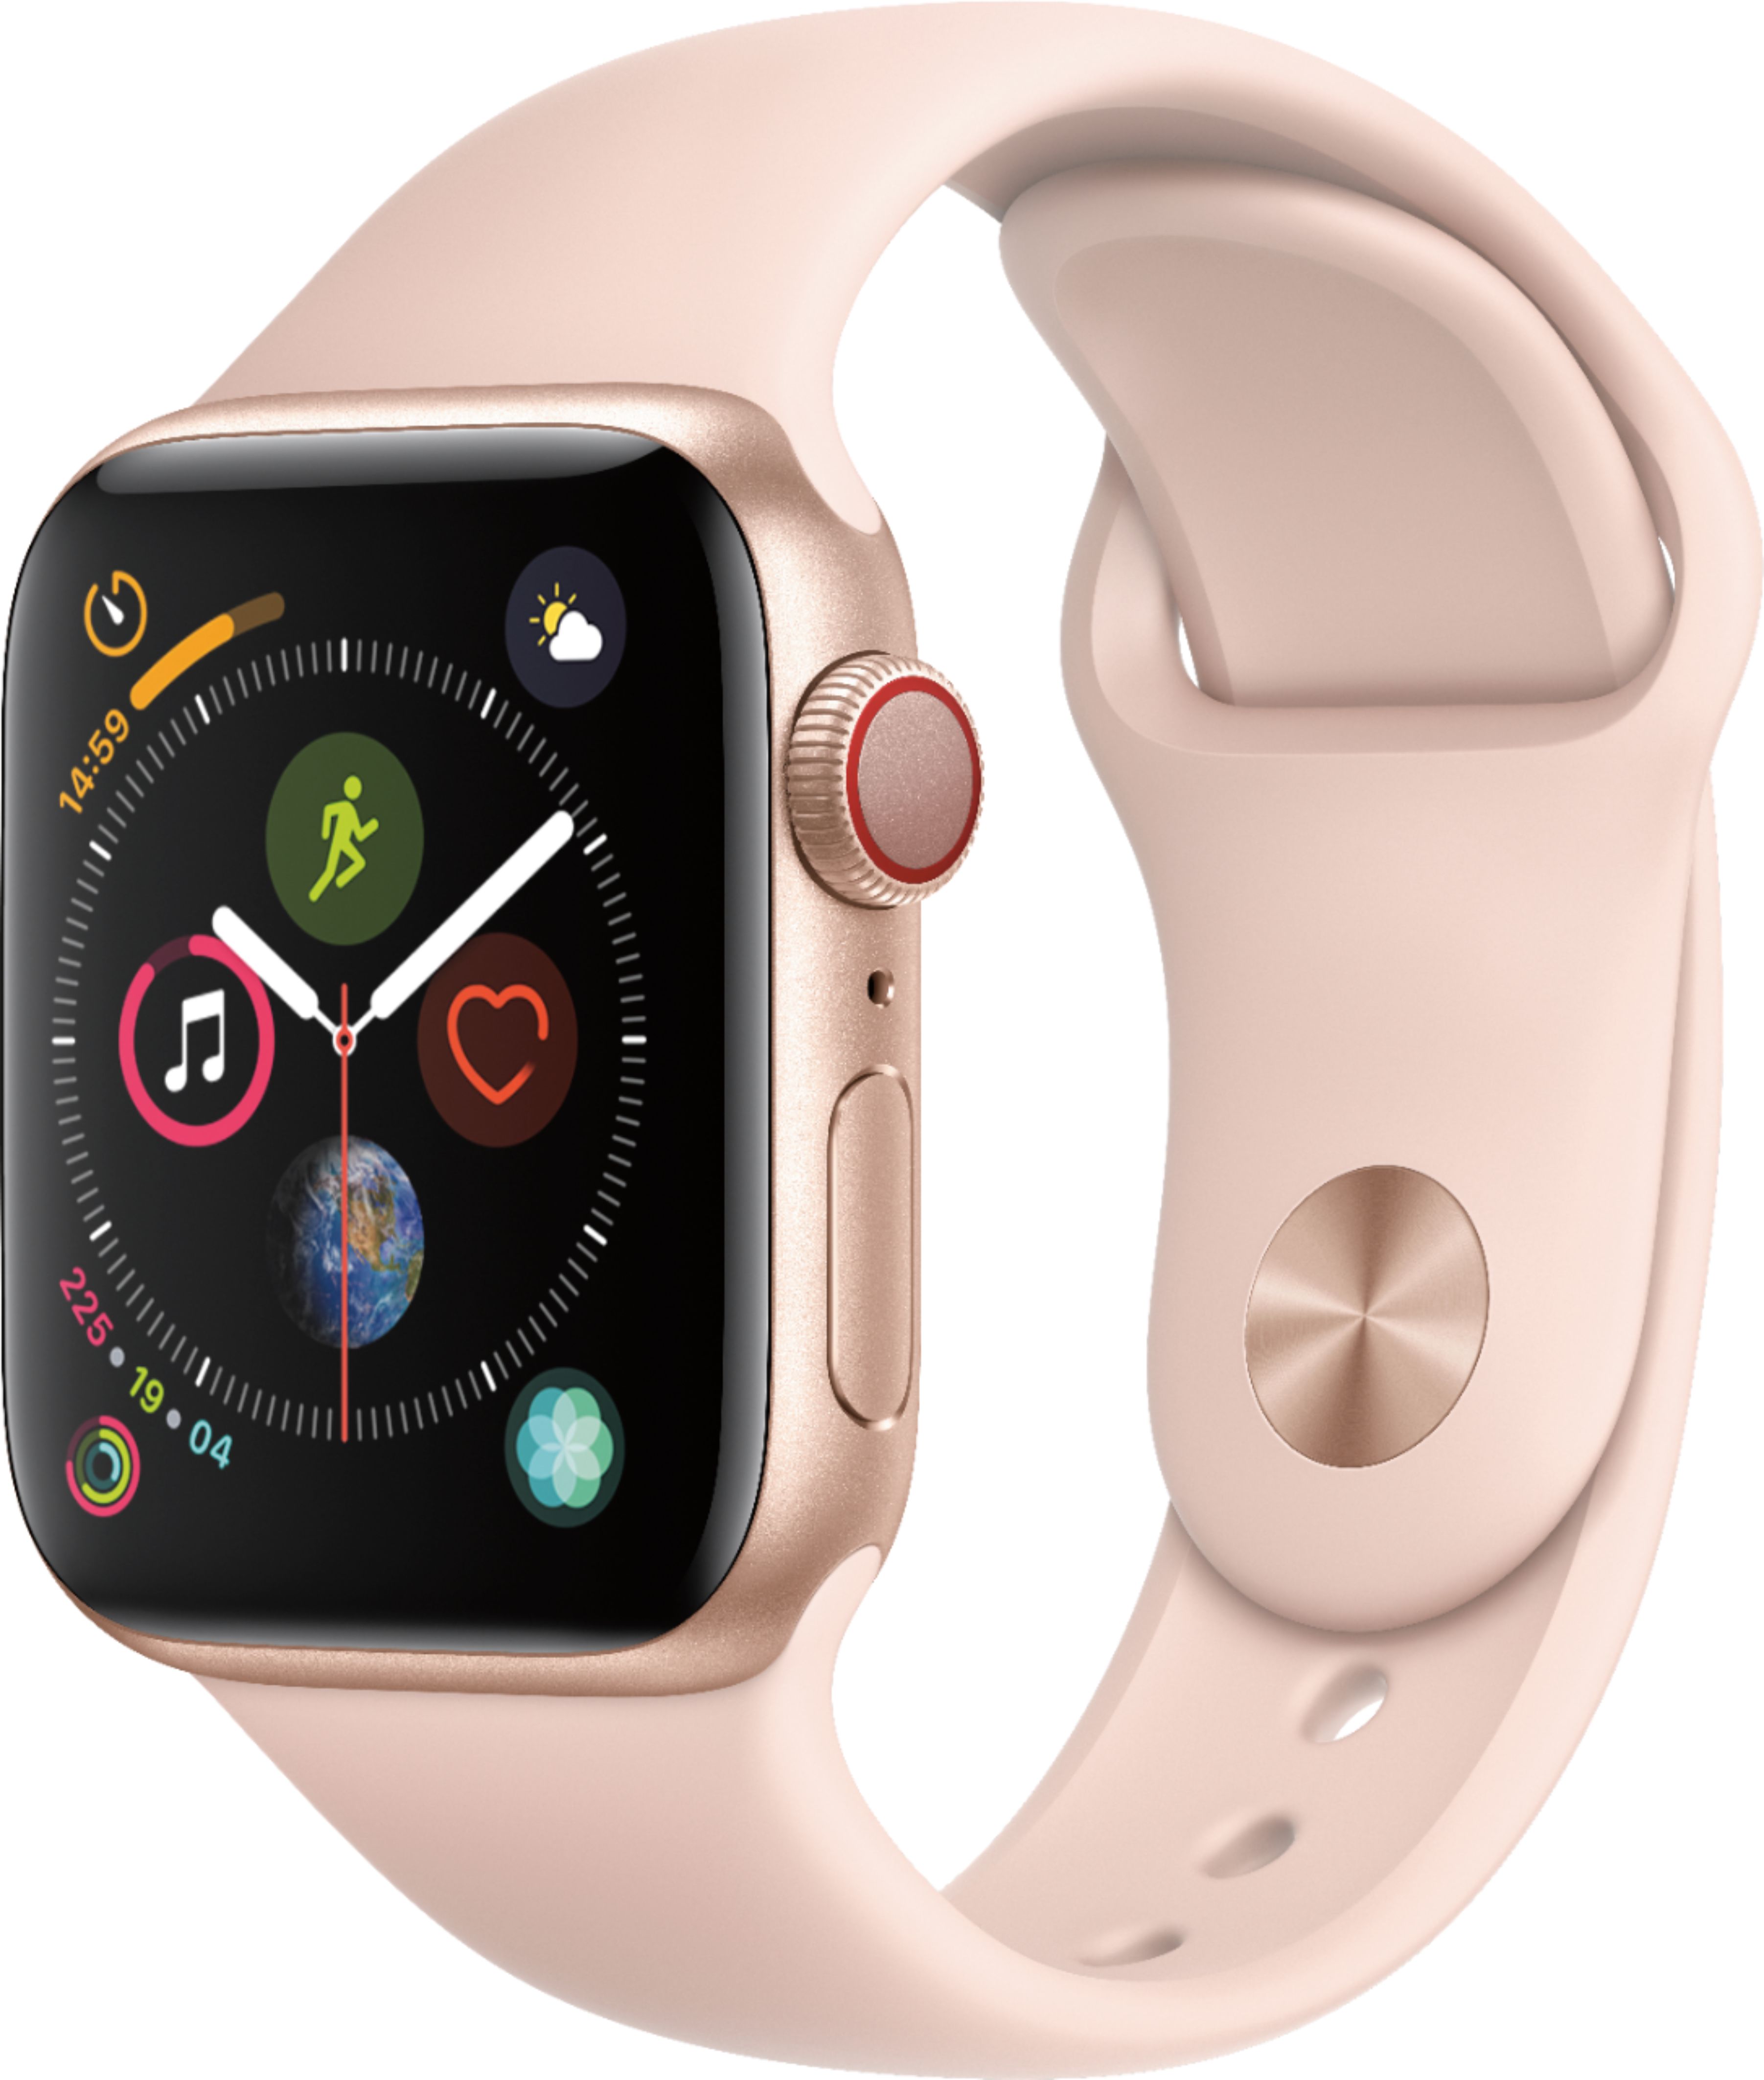 best deal on apple watch 4 gps